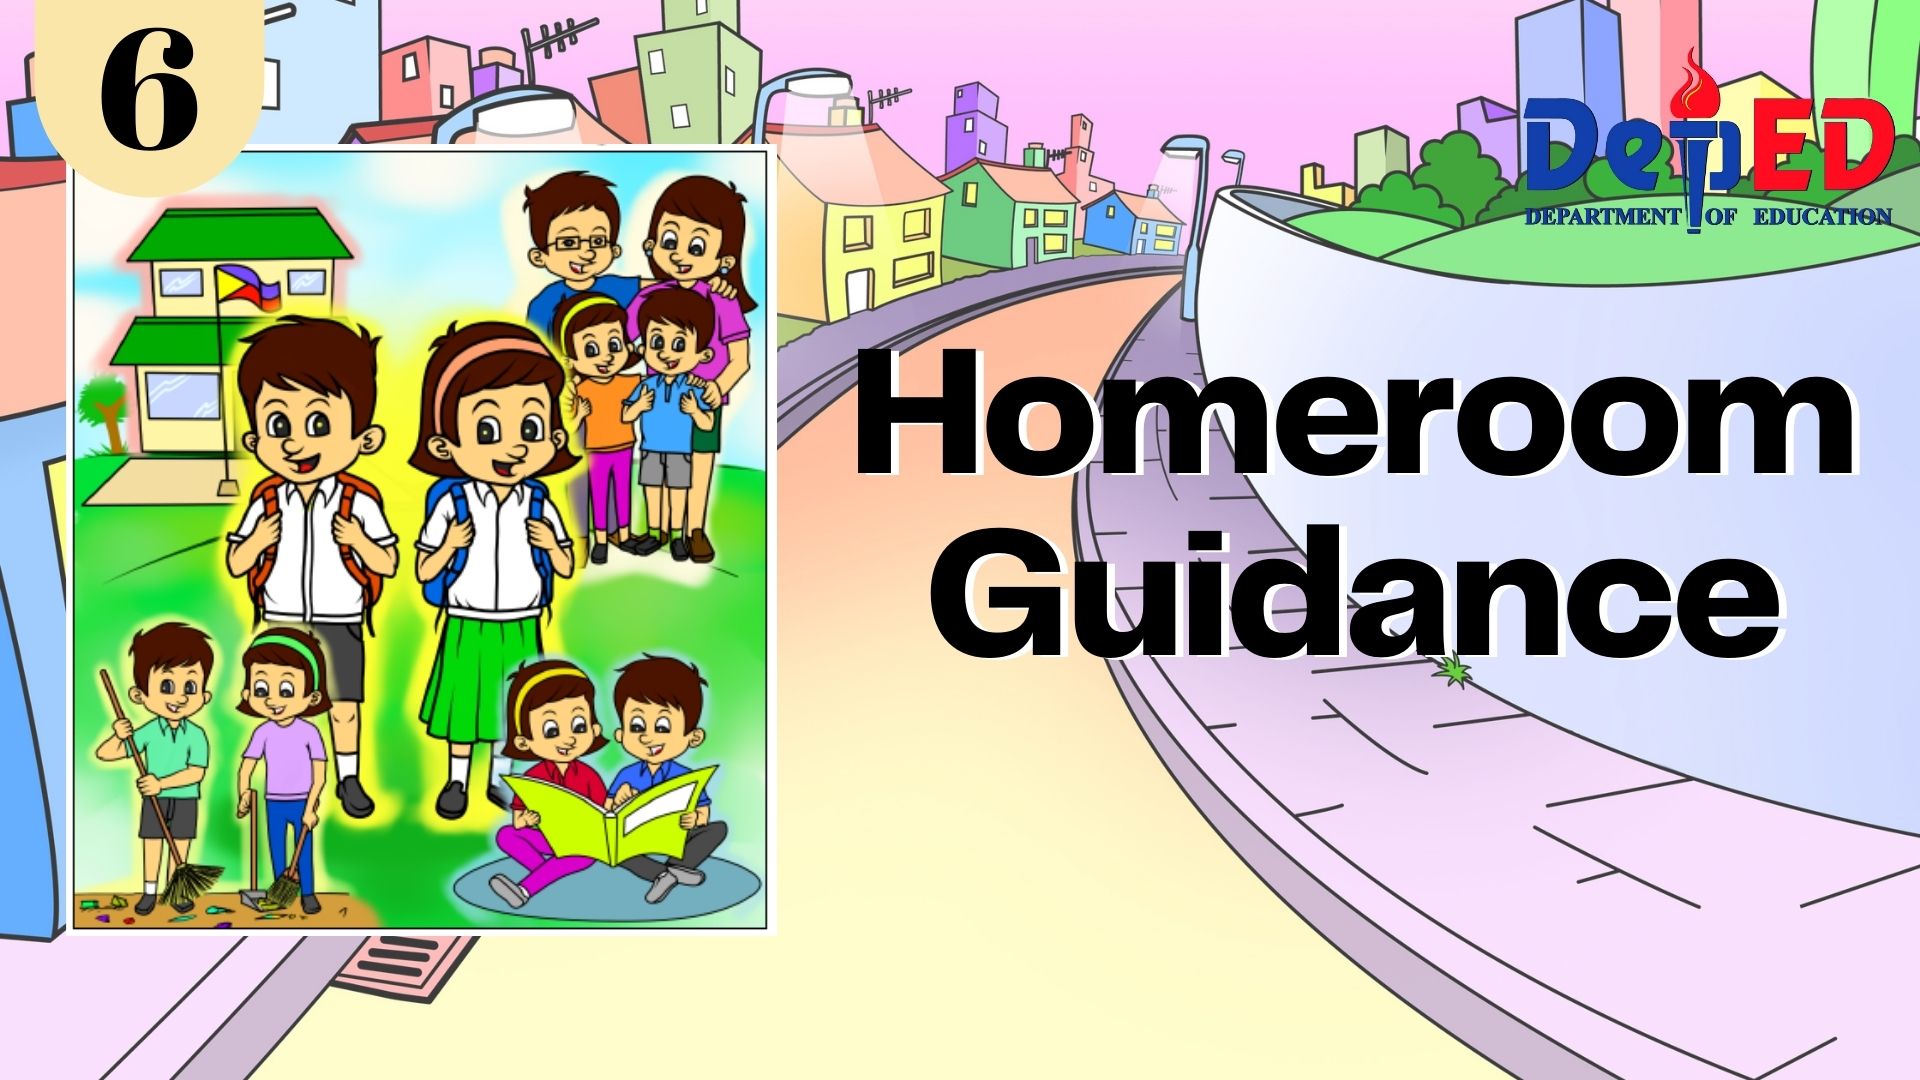 Quarter 2 Homeroom Guidance Grade 6 